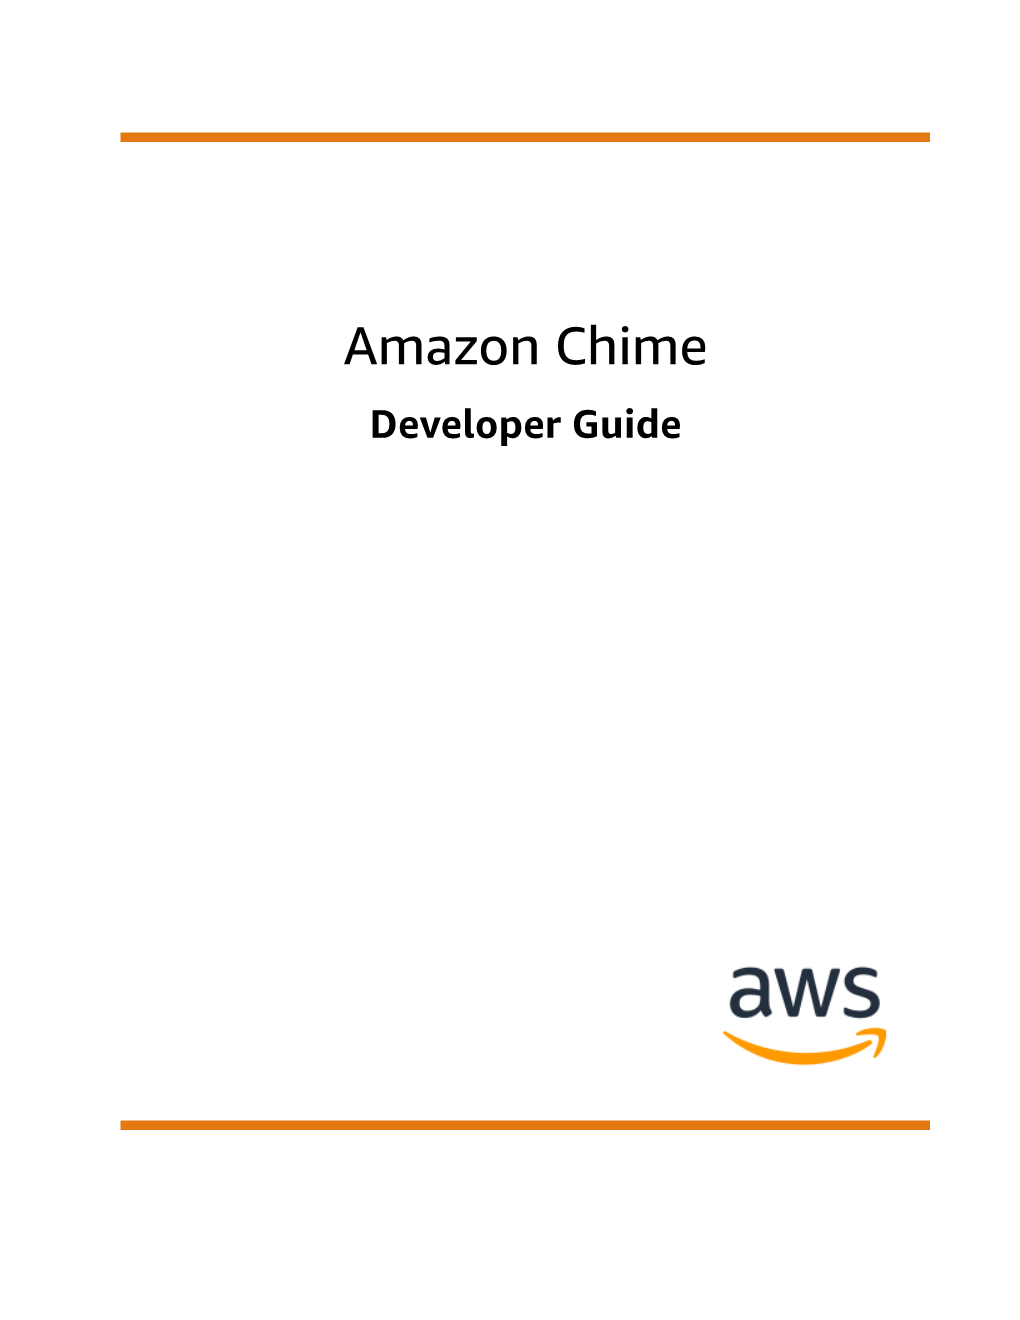 Developer Guide Amazon Chime Developer Guide